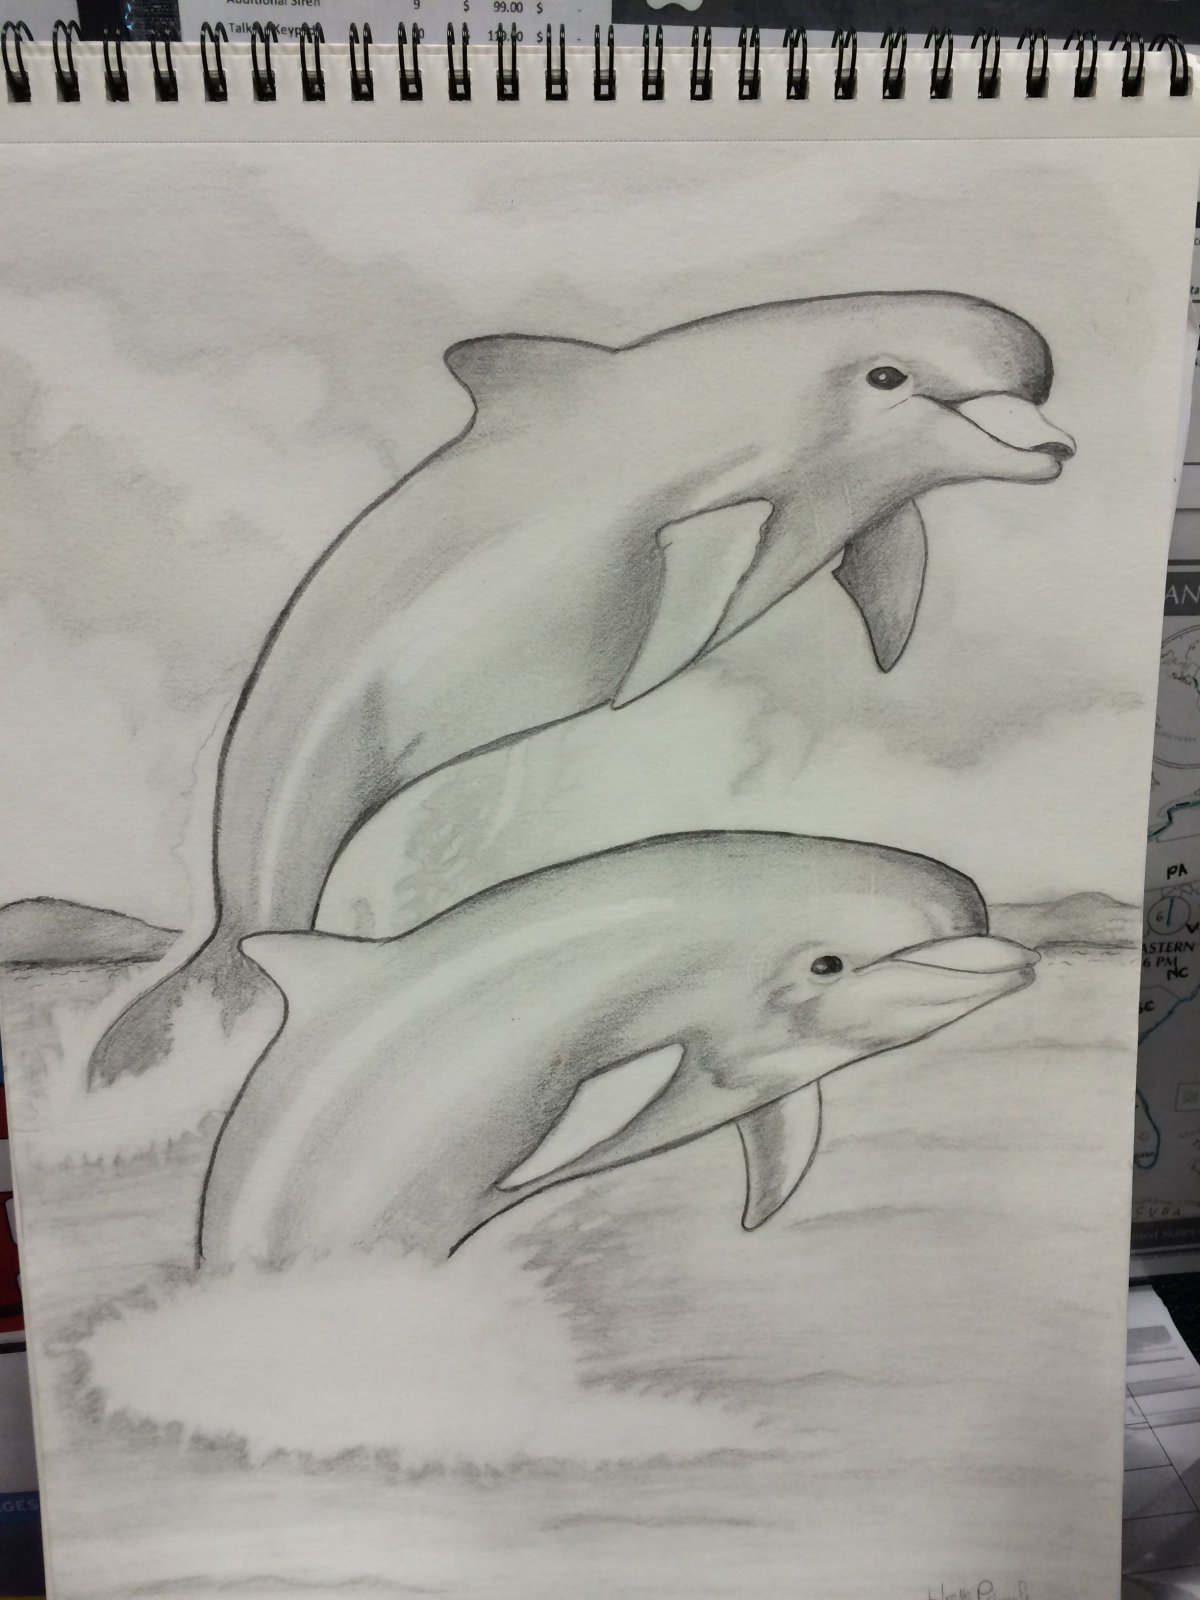 Дельфин рисунок карандашом